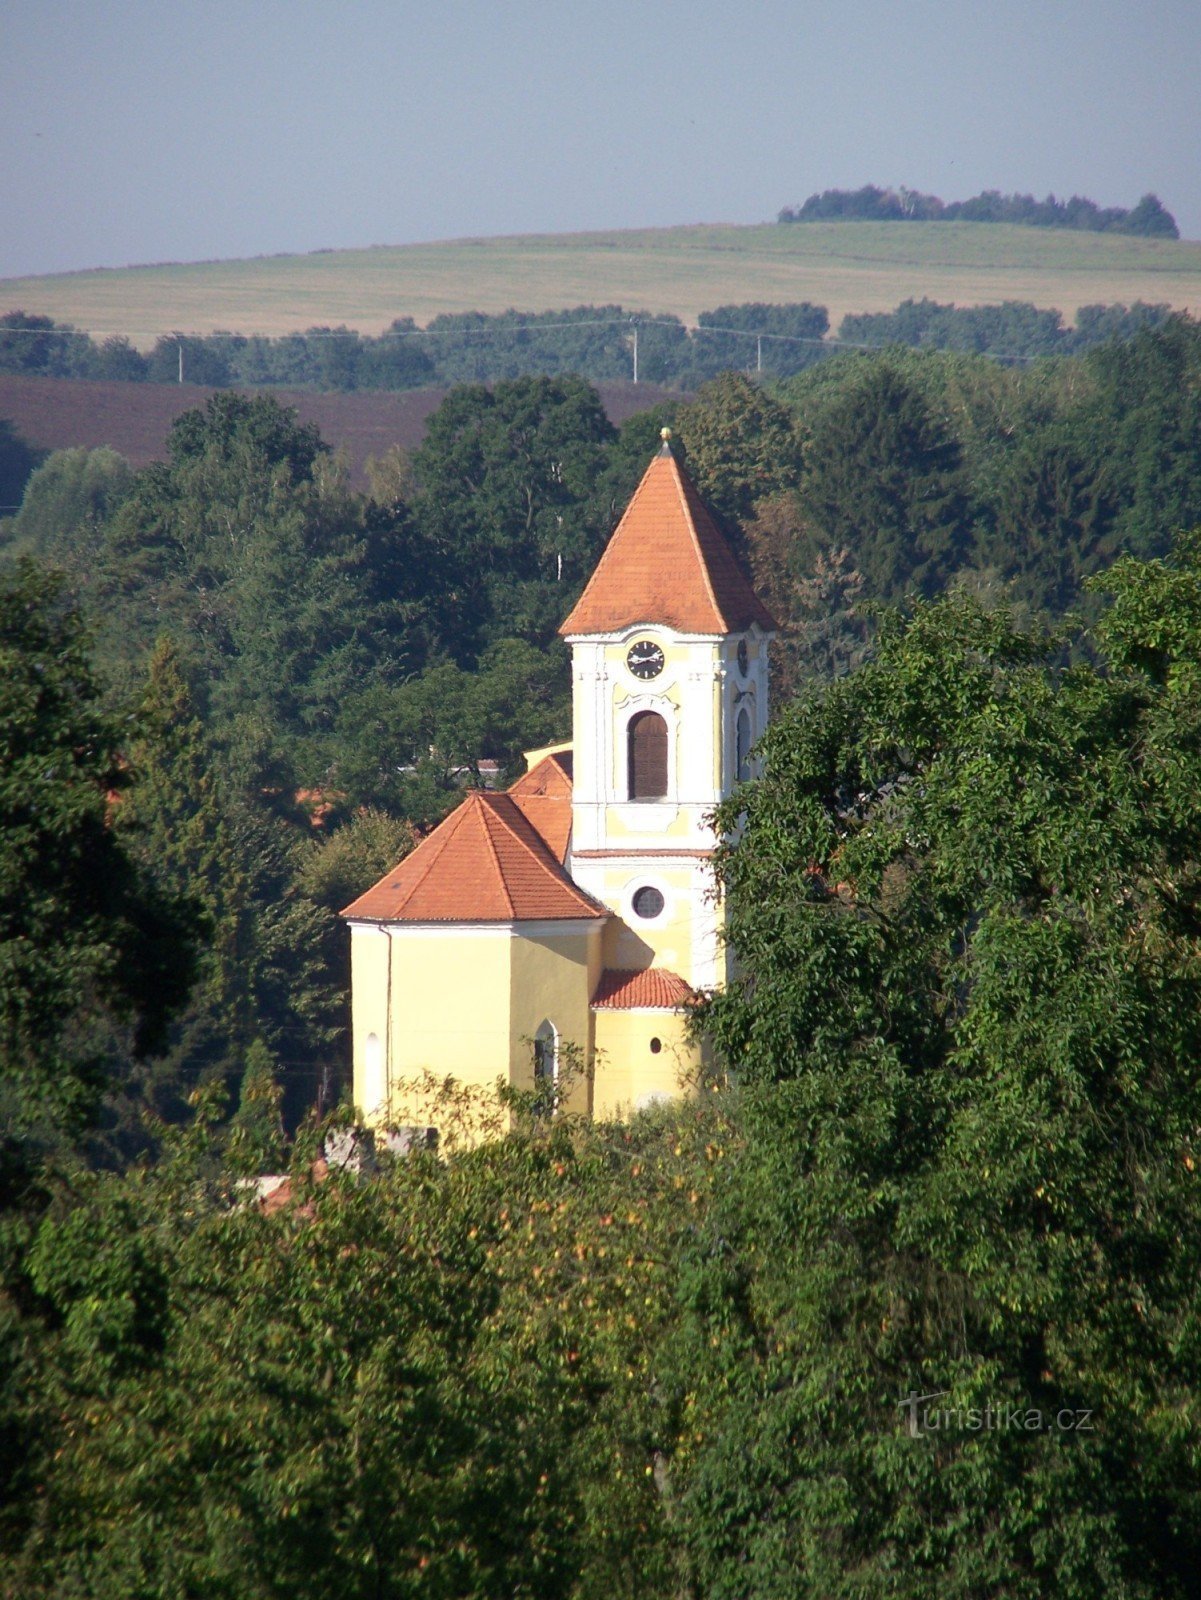 templom Szent Šimon és Judy Bystřicében, Benešov mellett